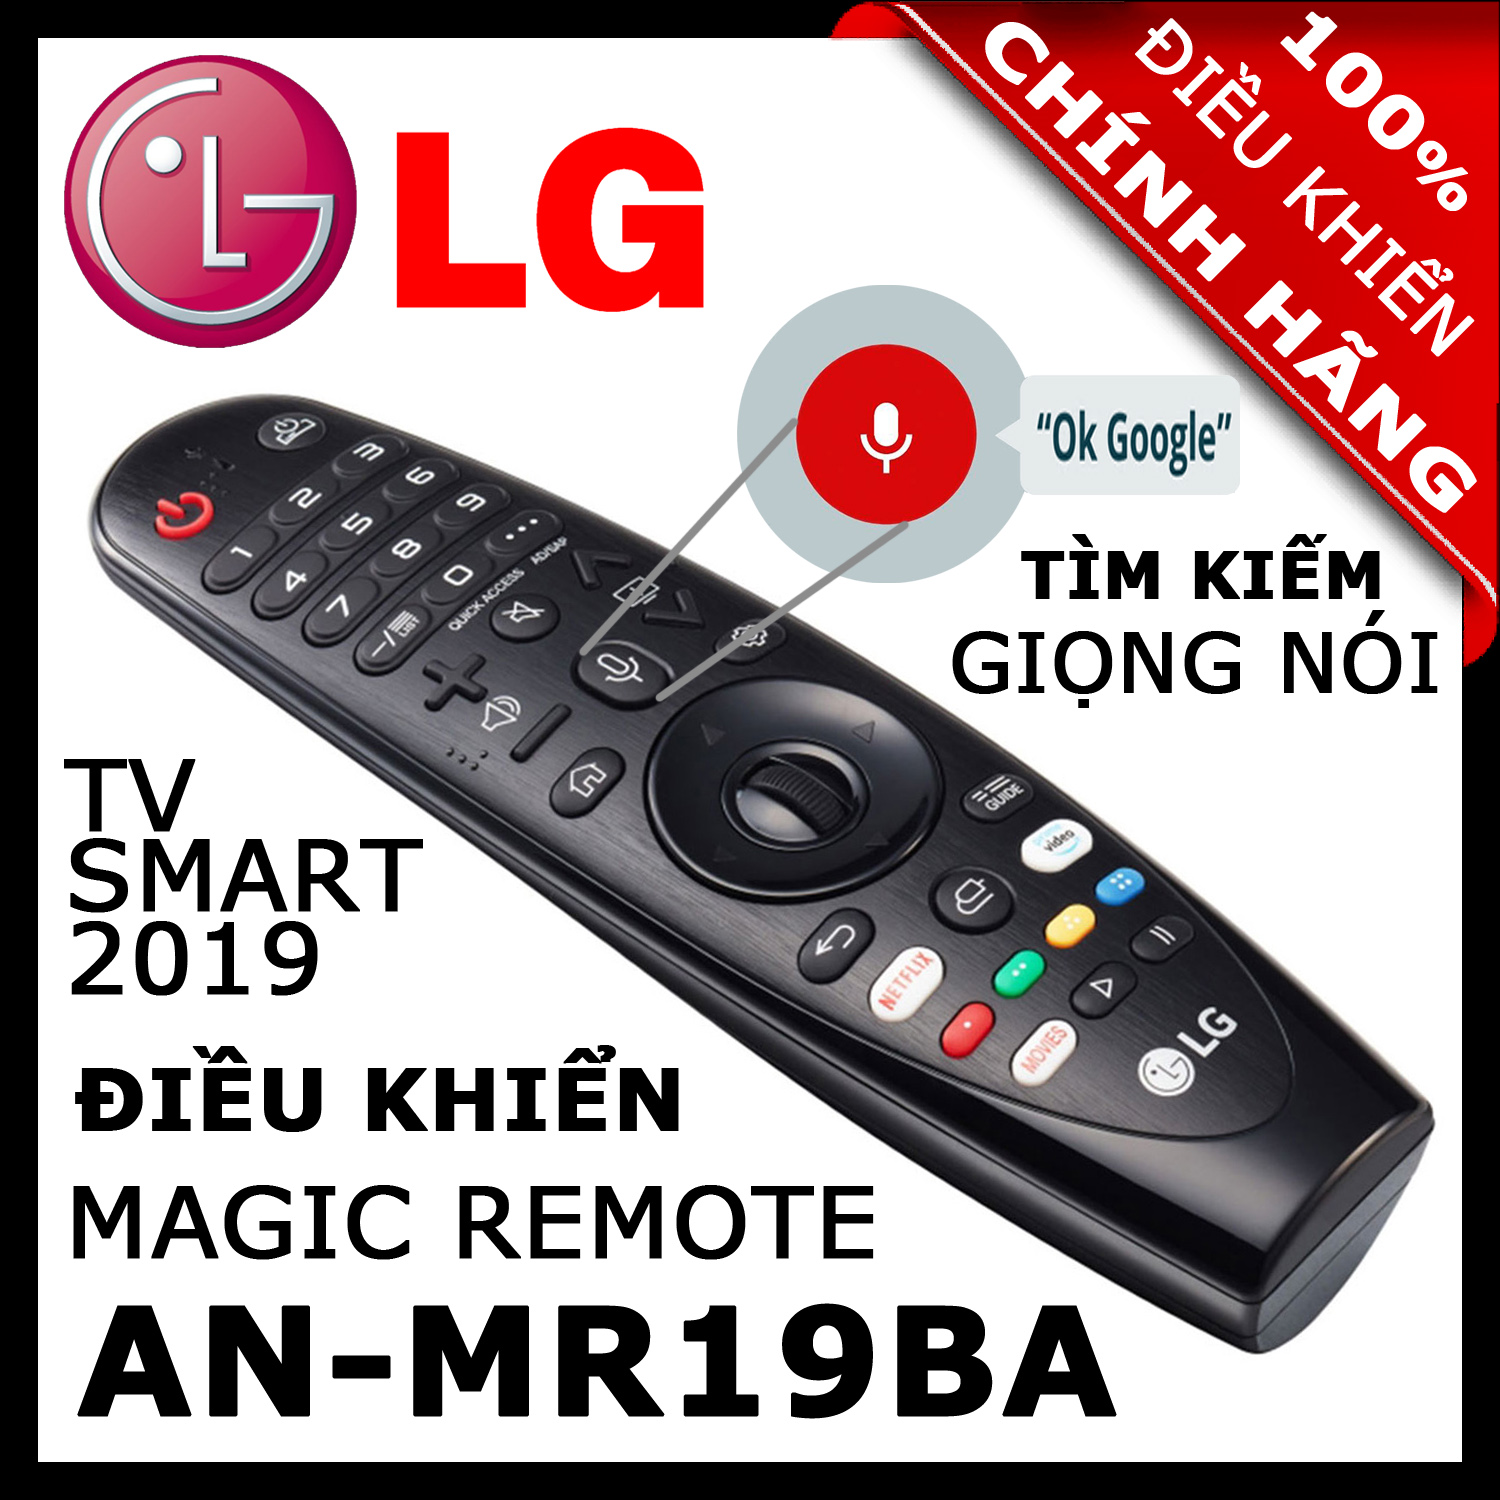 ĐIỀU KHIỂN Remote Tivi LG AN-MR19BA thay thế AN-MR18BA và AN-MR650 có Giọng nói Chuột bay cho tivi LG 2019, 2018, 2017 Magic Remote AN-MR19BA HÀNG XỊN. Remote cho tivi LG sản xuất năm 2019